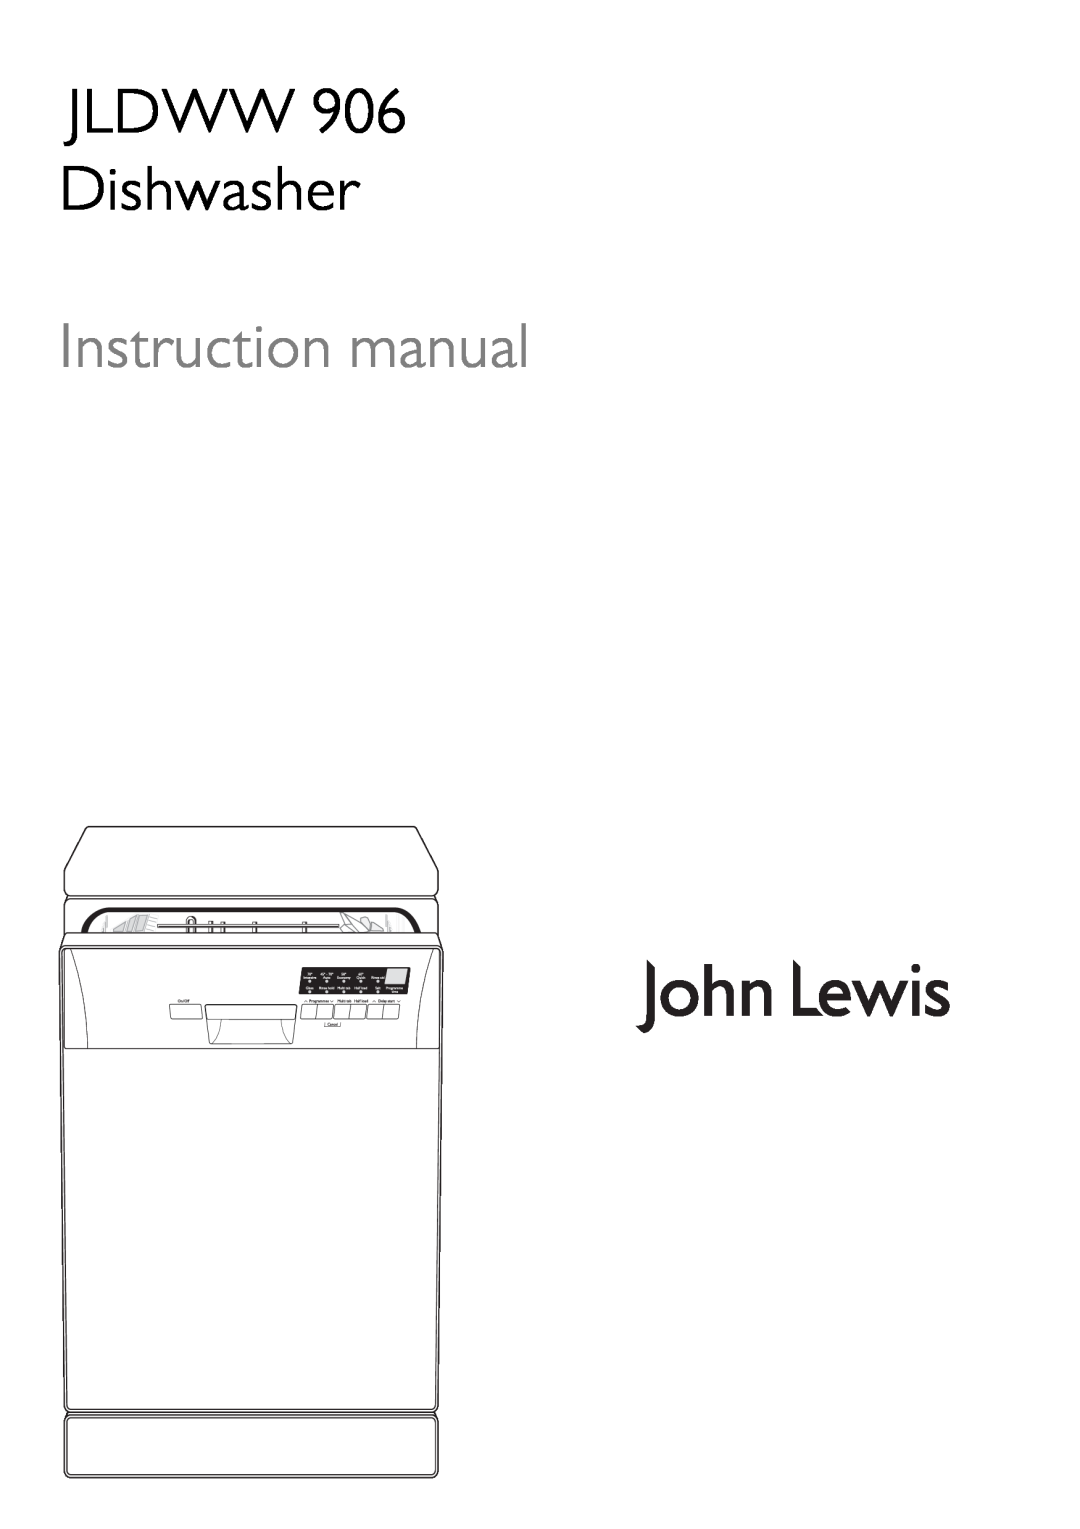 John Lewis JLDWW 906 instruction manual JLDWW Dishwasher 